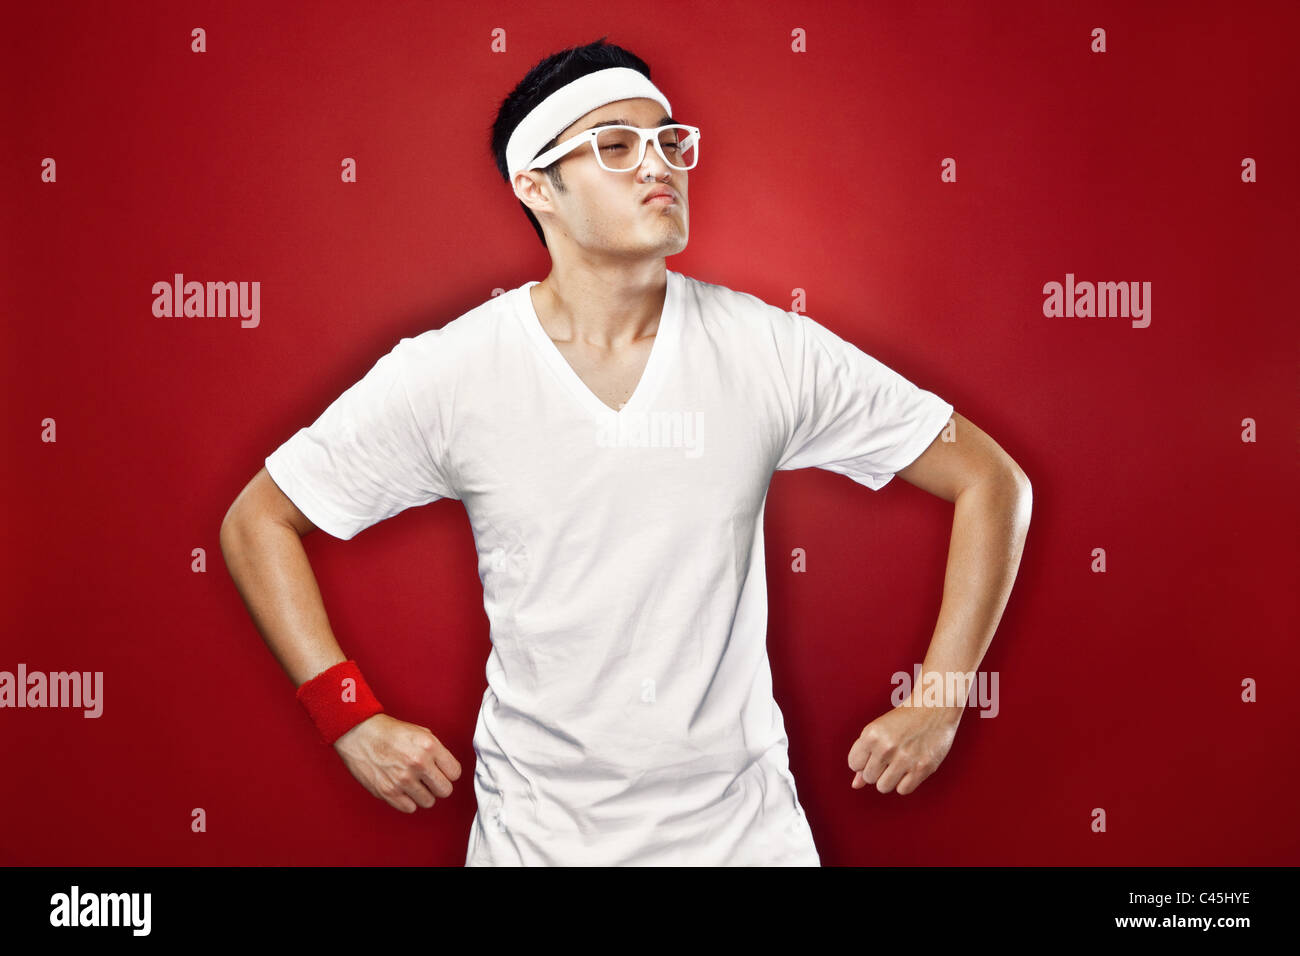 Studio portrait of Asian male adolescent faisant un super héros posent en blanc athletic gear & lunettes nerdy contre une toile de fond rouge. Banque D'Images